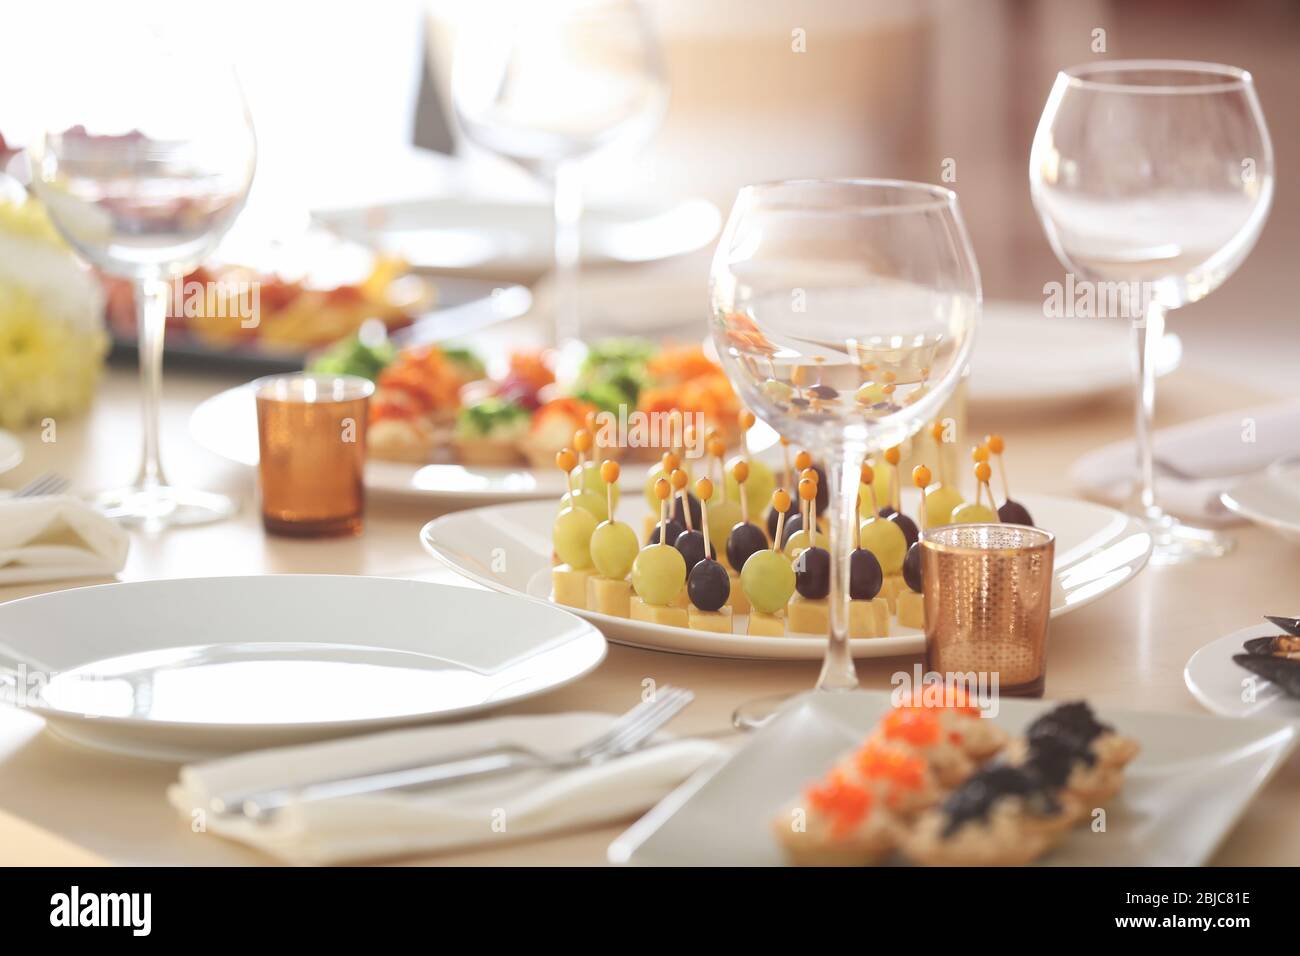 Plato con sabrosos canapés en la mesa servido para el buffet de vacaciones Foto de stock